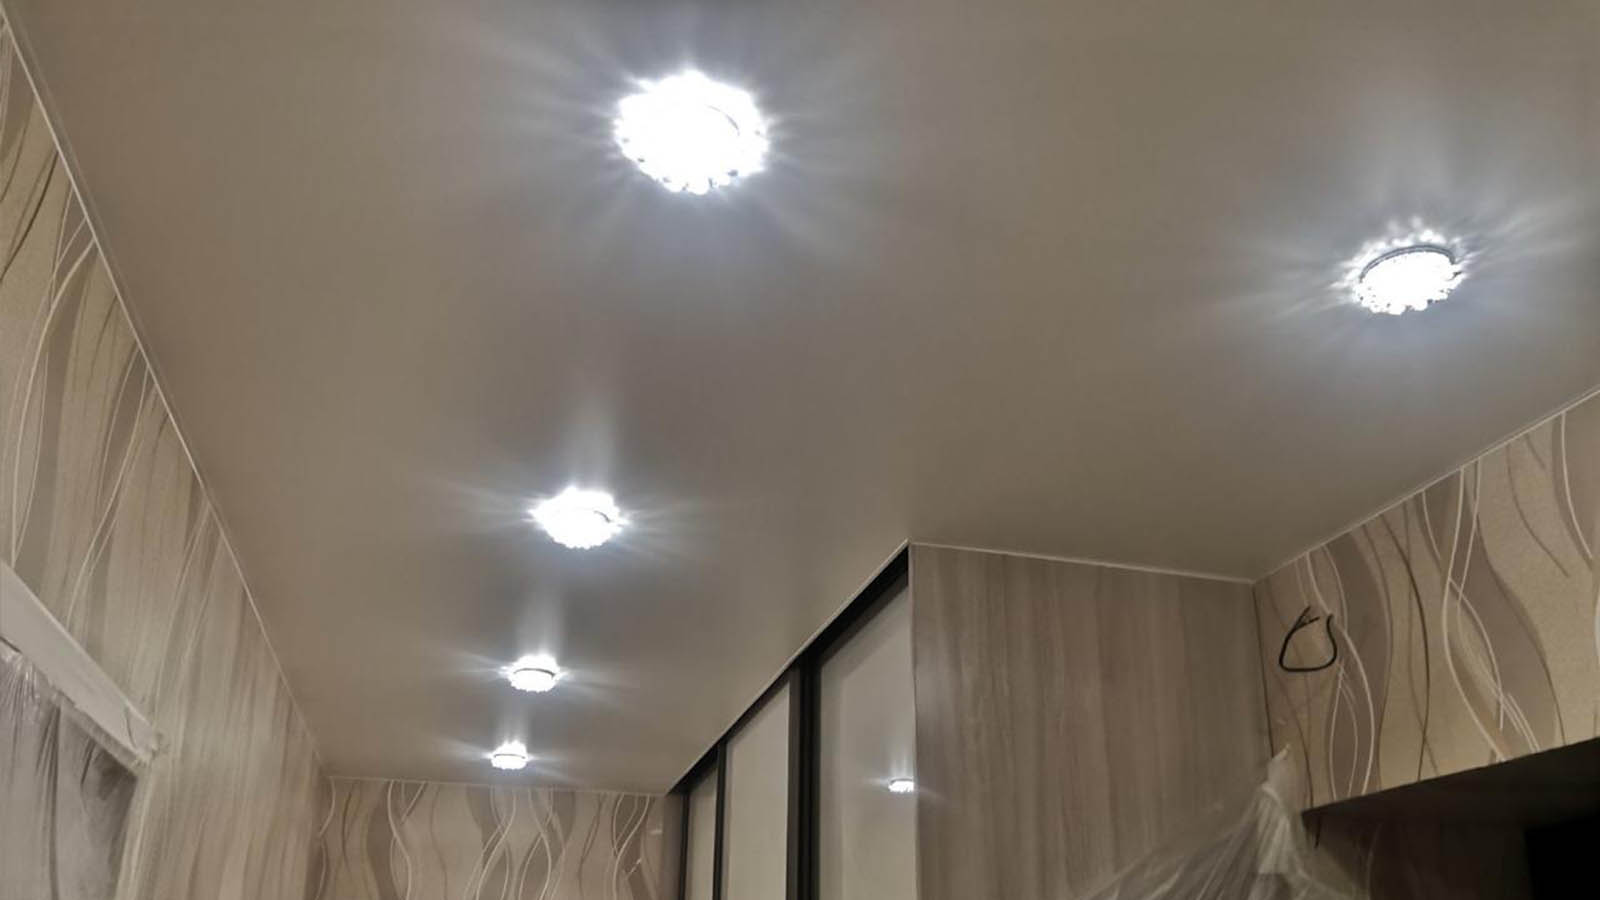 дизайн лампочек на натяжном потолке в коридоре